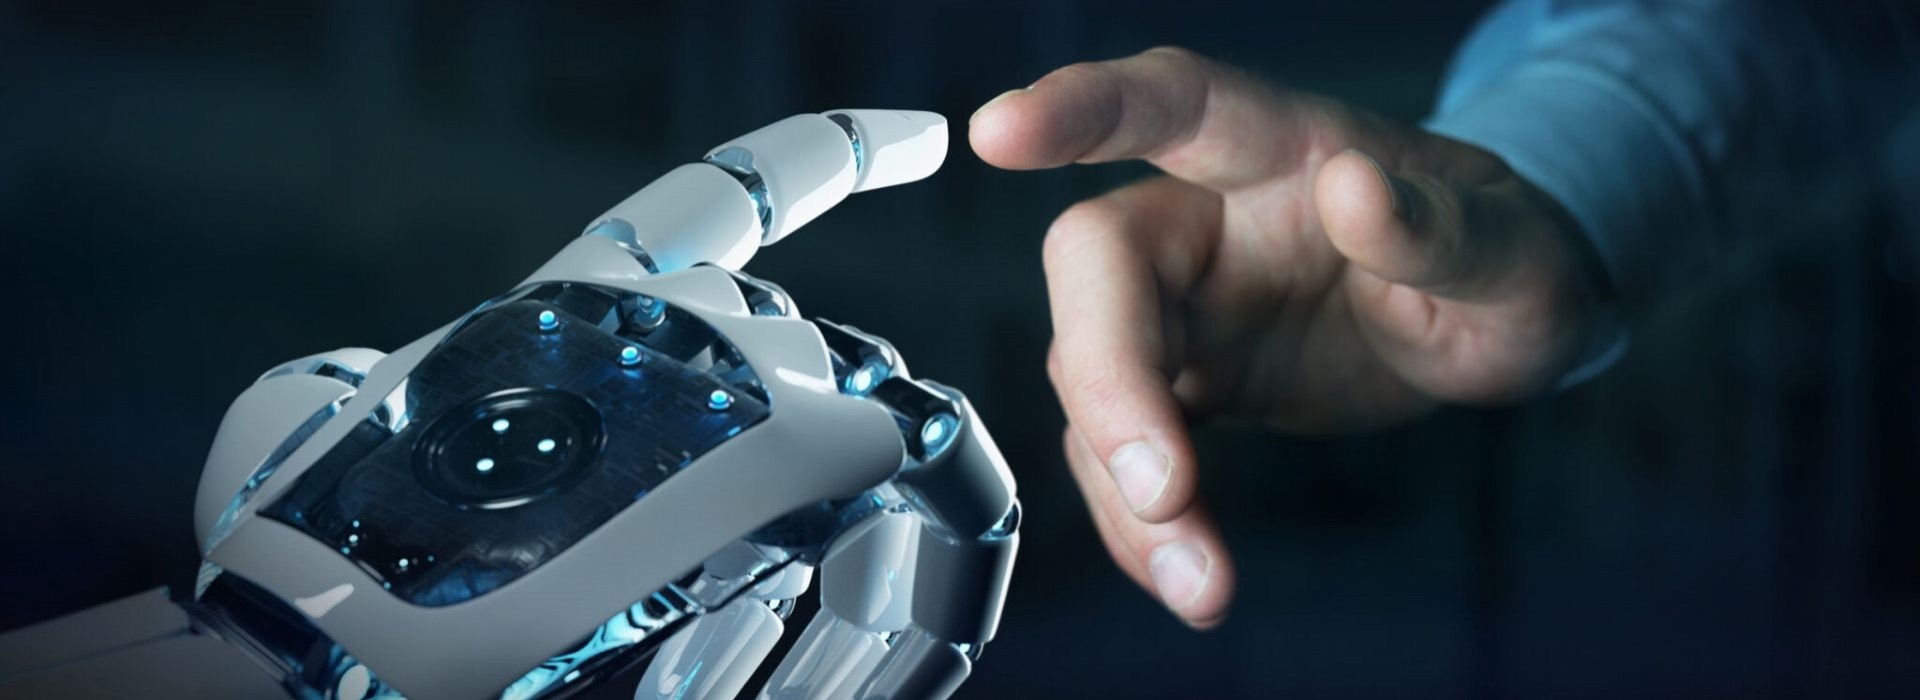 Rozwój sztucznej inteligencji - szanse i zagrożenia